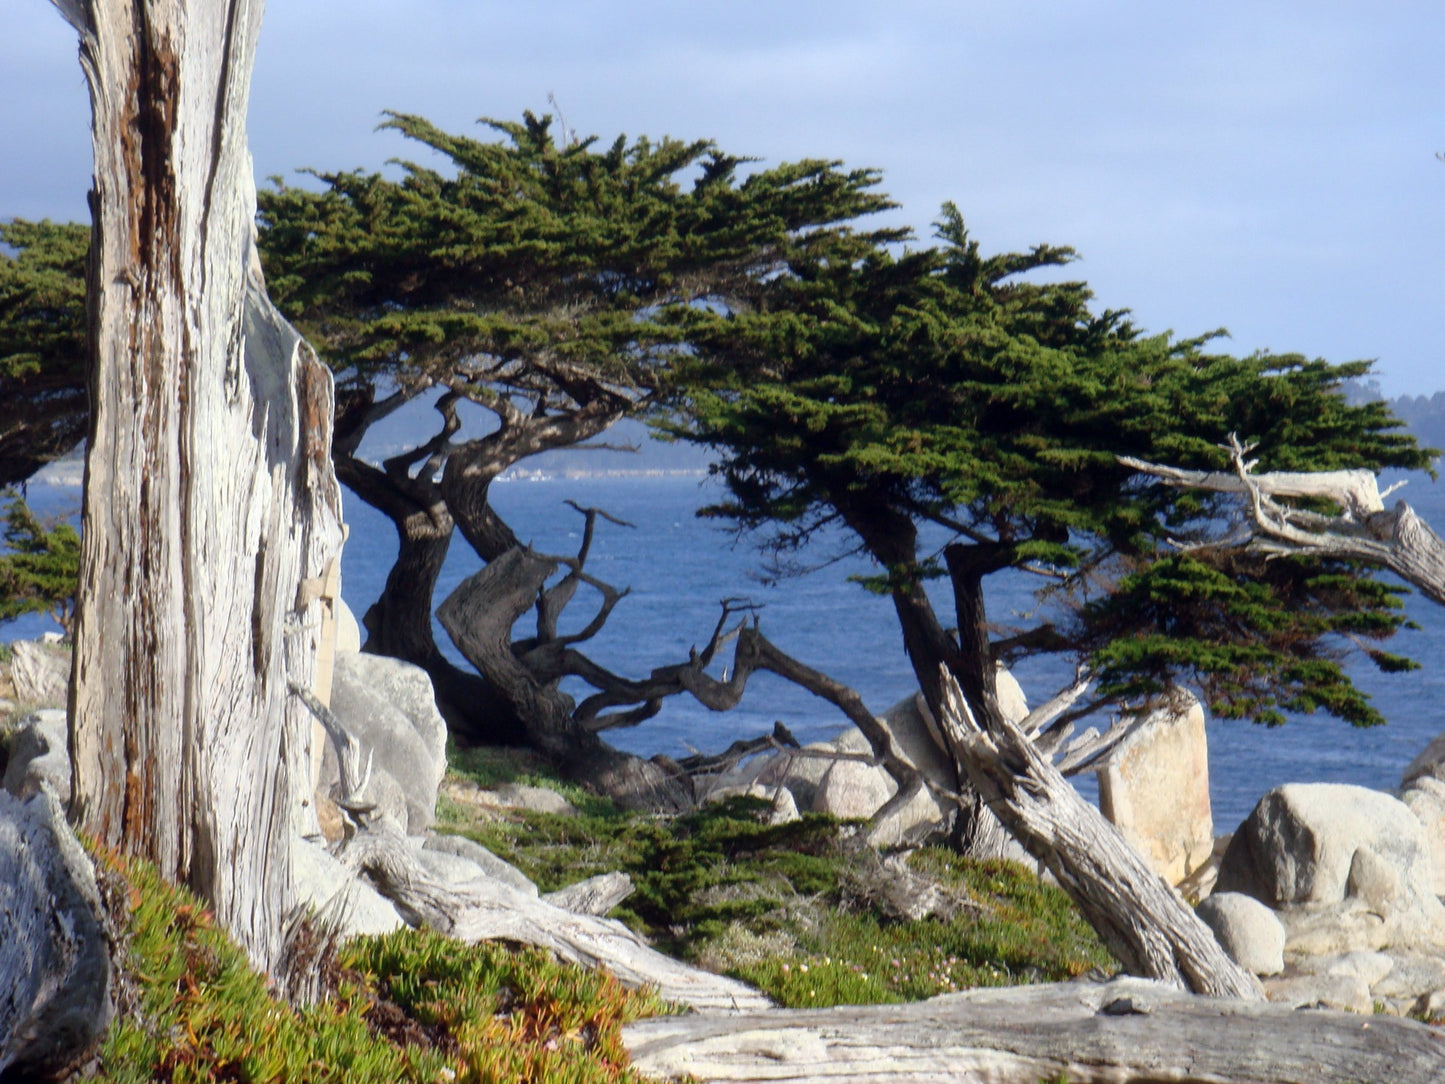 Cupressus macrocarpa - Monterey cypress, lemon cypress (Forestry alveolus)